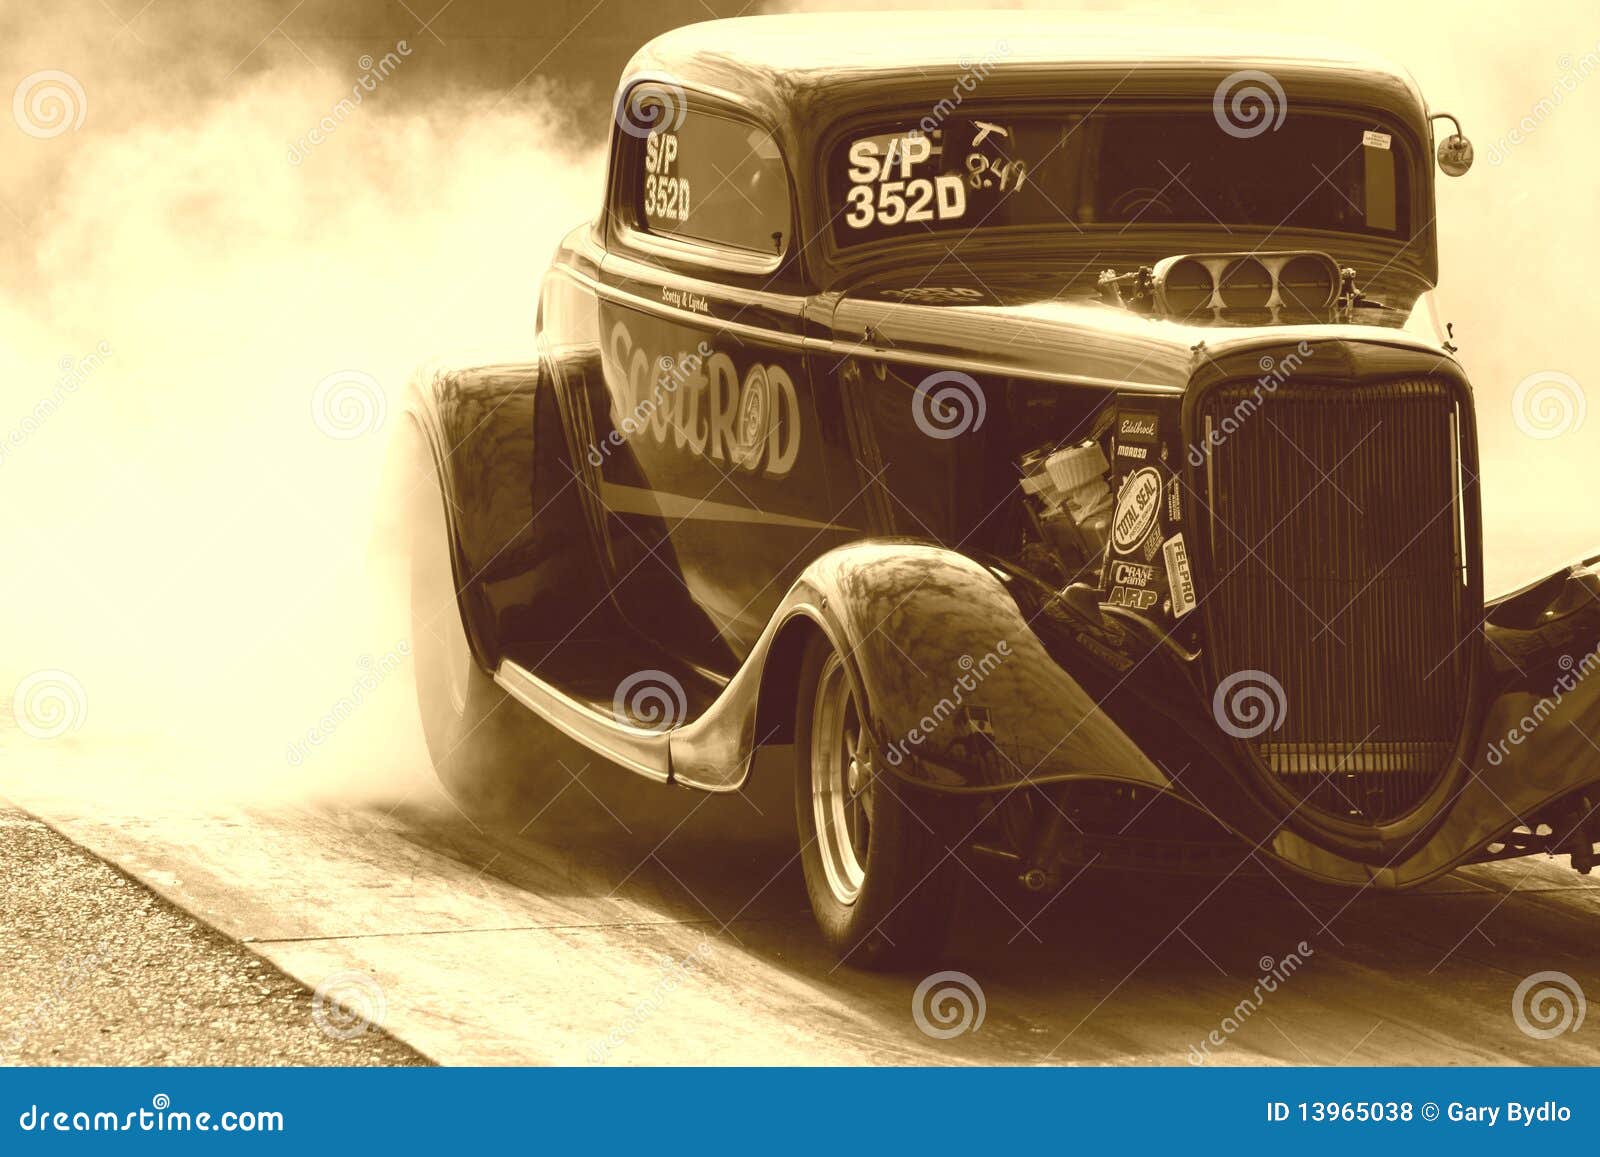 old-race-car-13965038.jpg